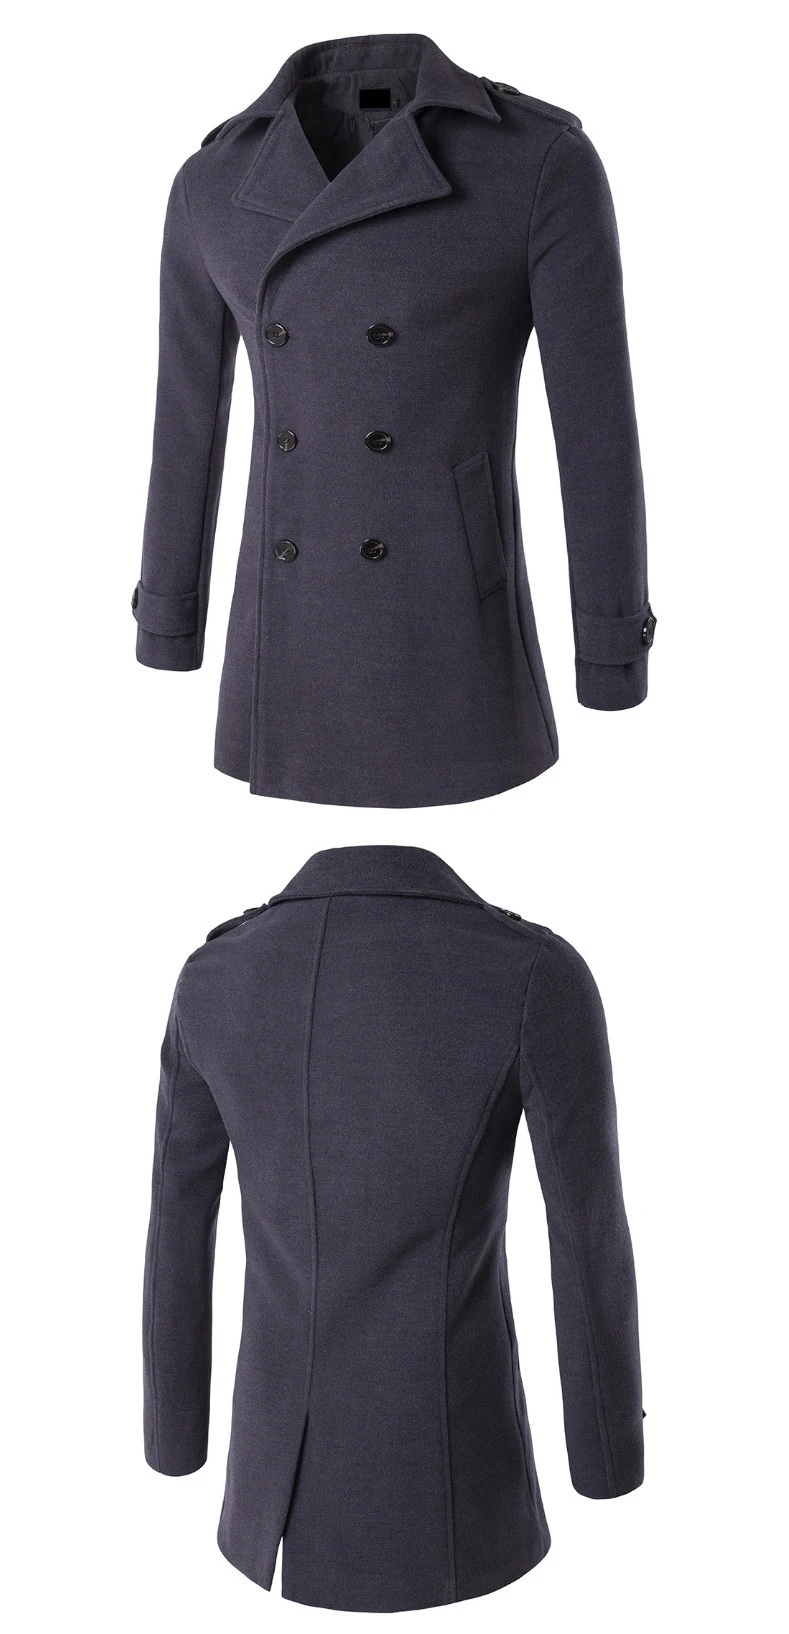 DQIYU новое шерстяное пальто мужское двубортное шерстяное пальто осень зима приталенное длинное бушлат мужские ветрозащитные куртки 4XL